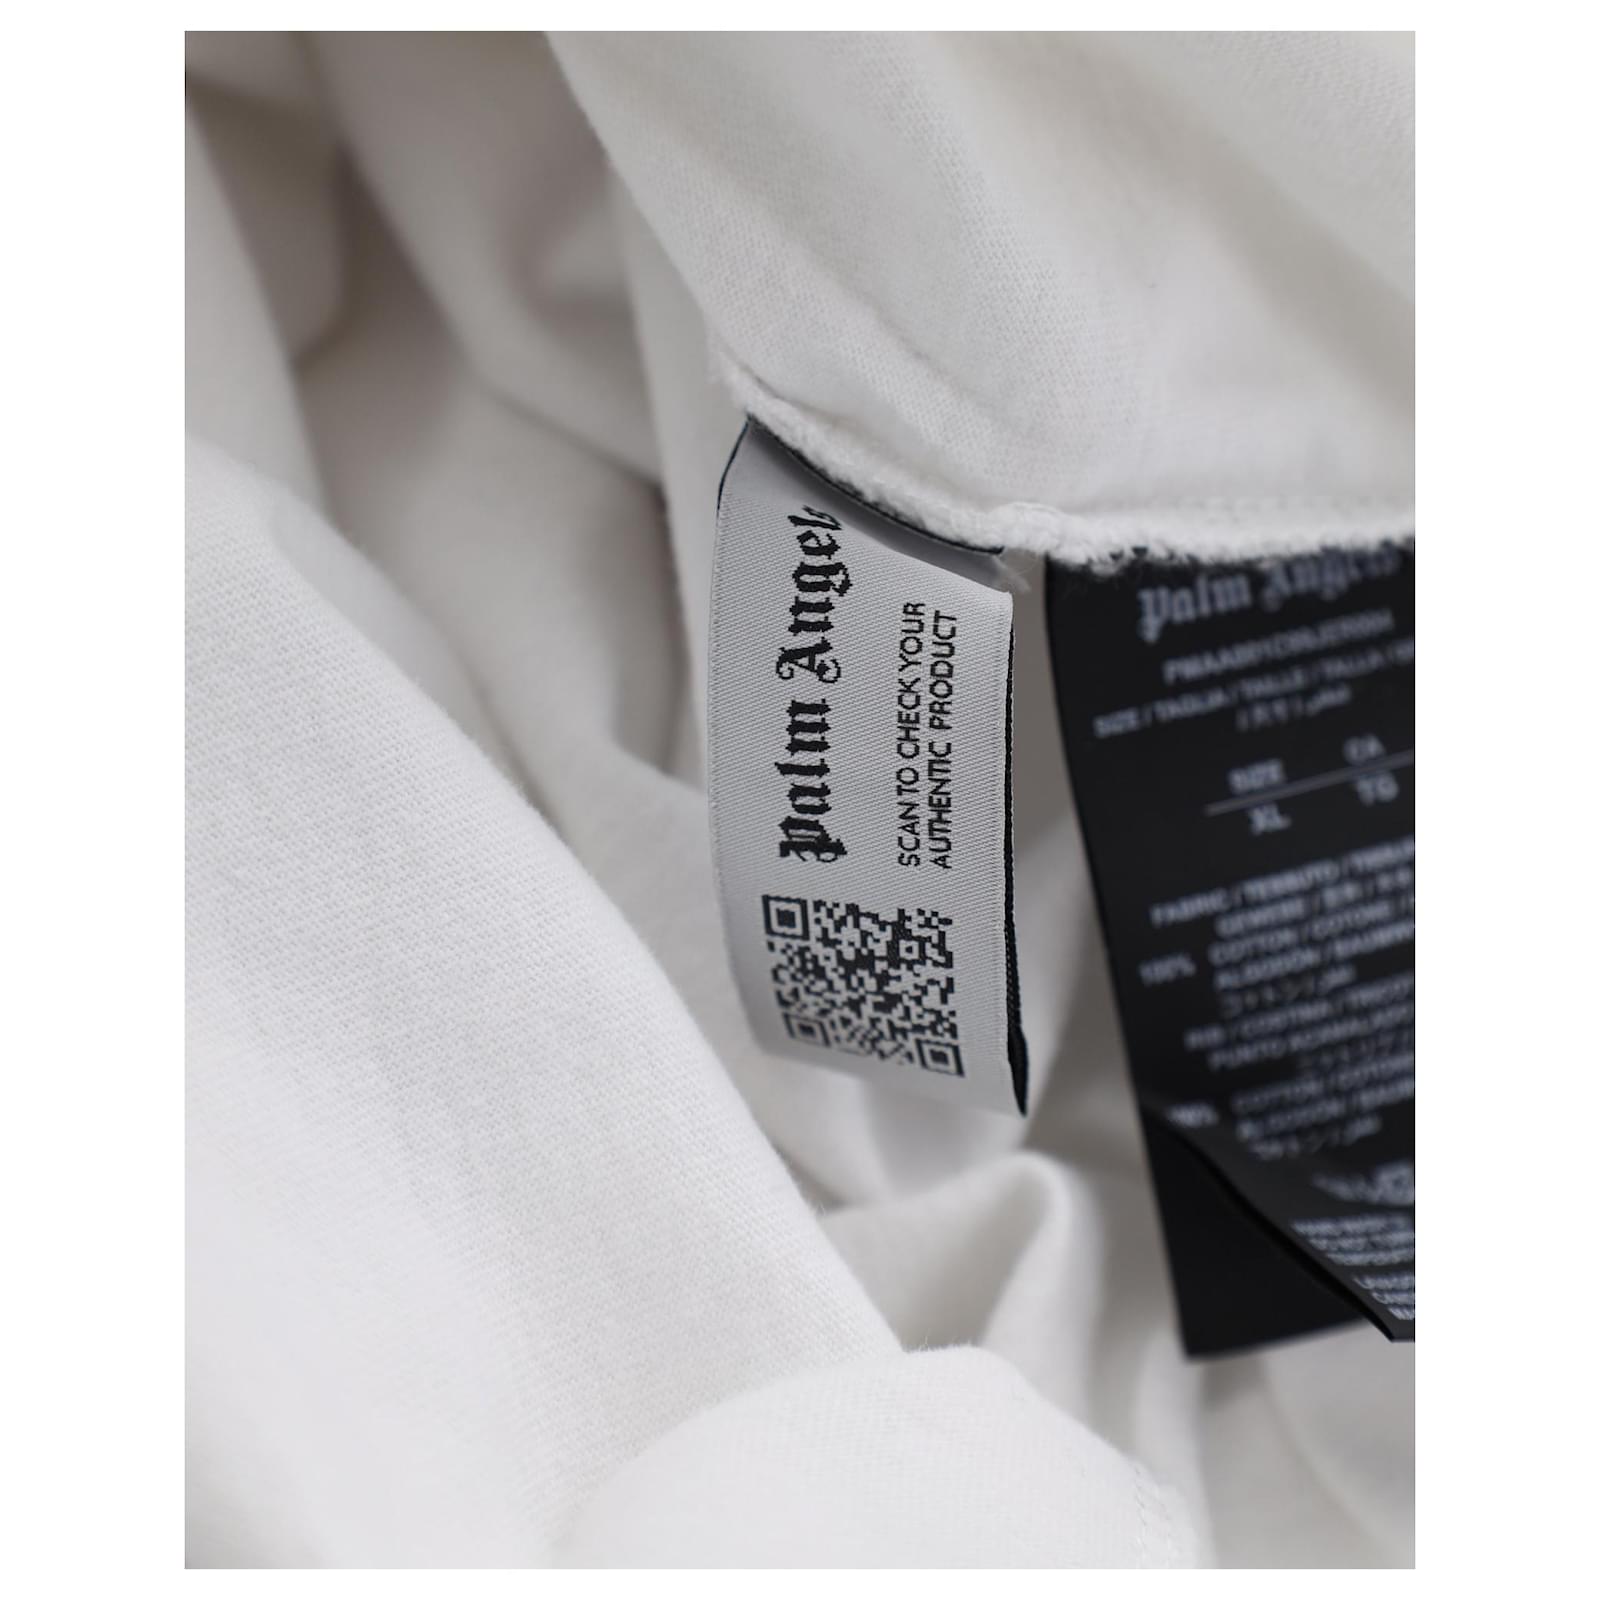 Camiseta Palm Angels London pulverizada em algodão branco